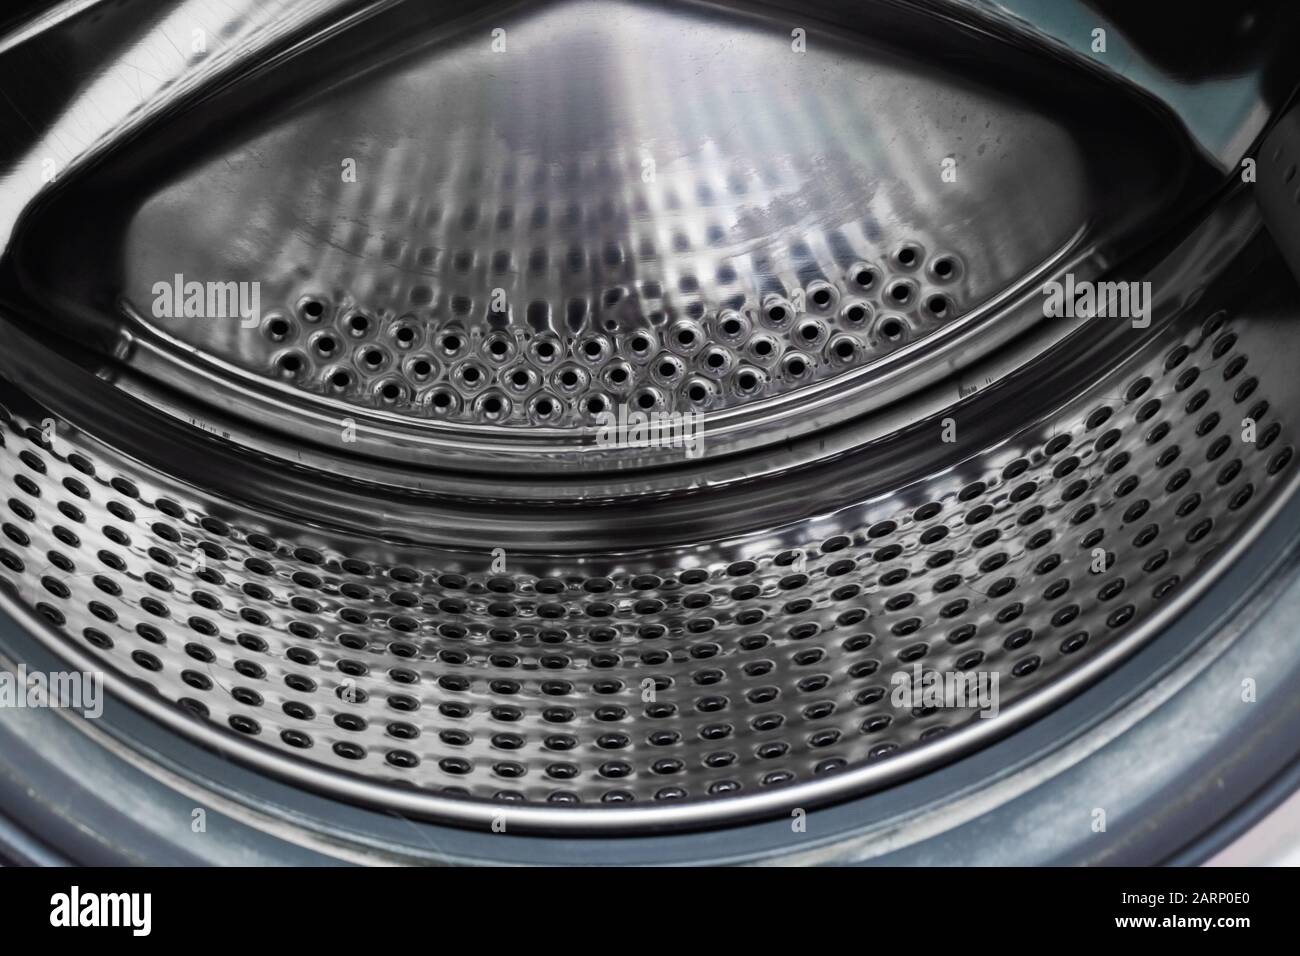 Die Waschmaschinentrommel in Nahaufnahme Stockfotografie - Alamy